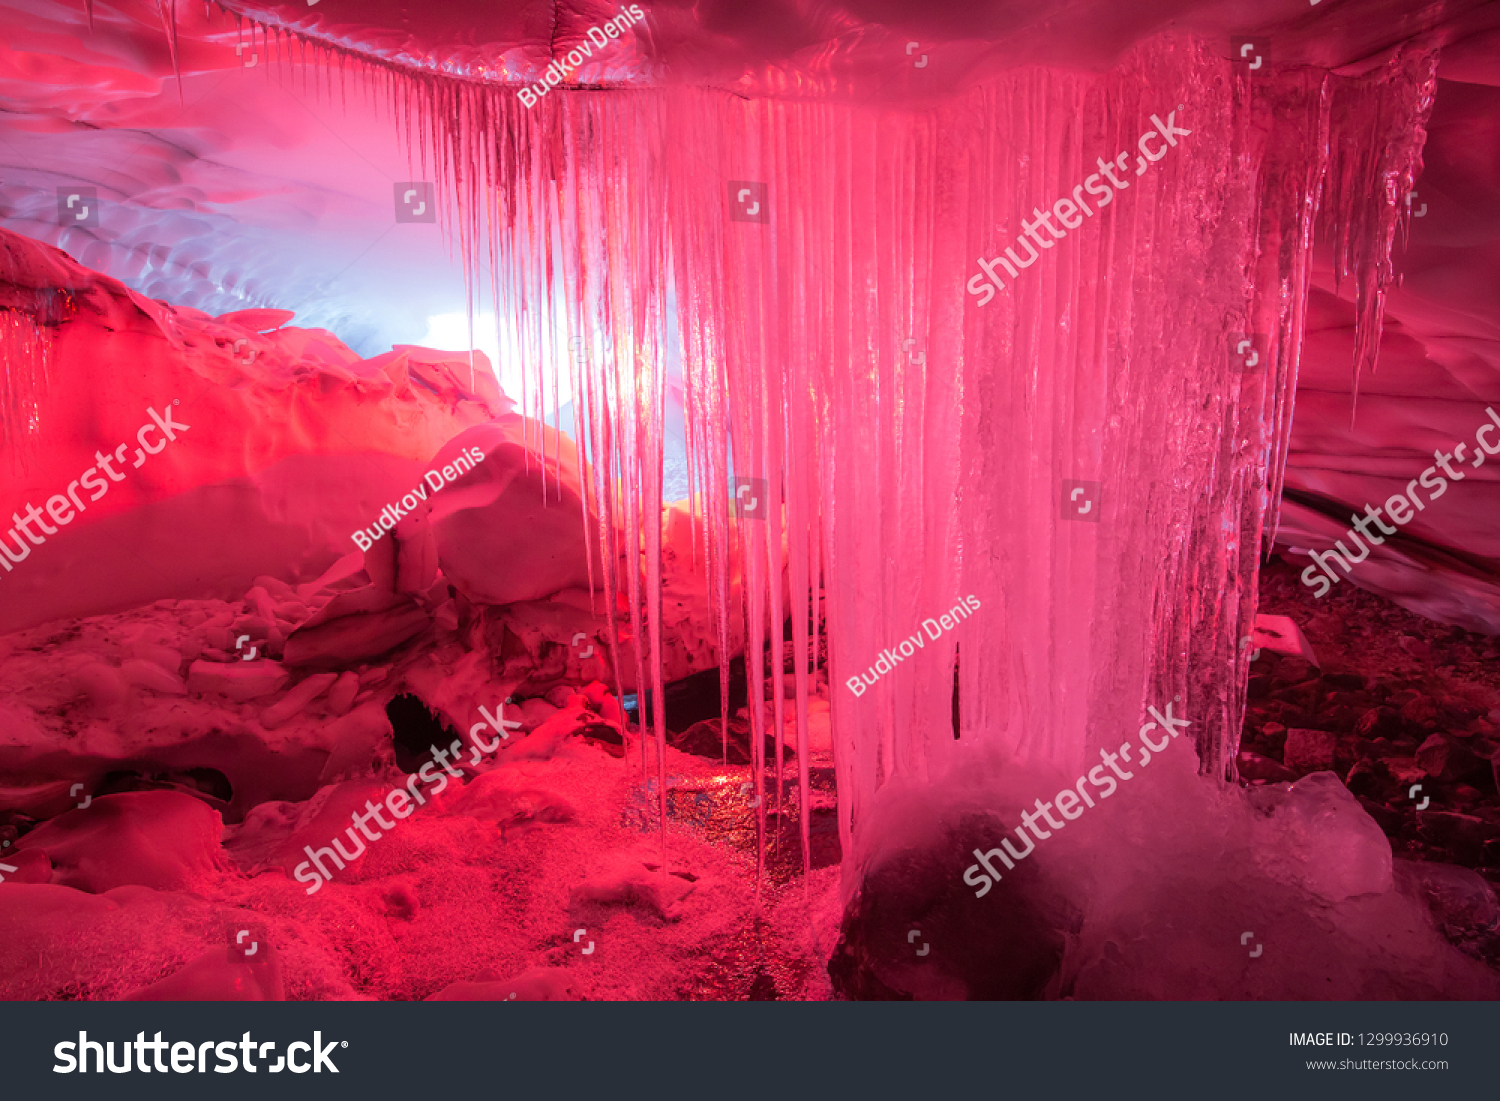 kamchatka cave